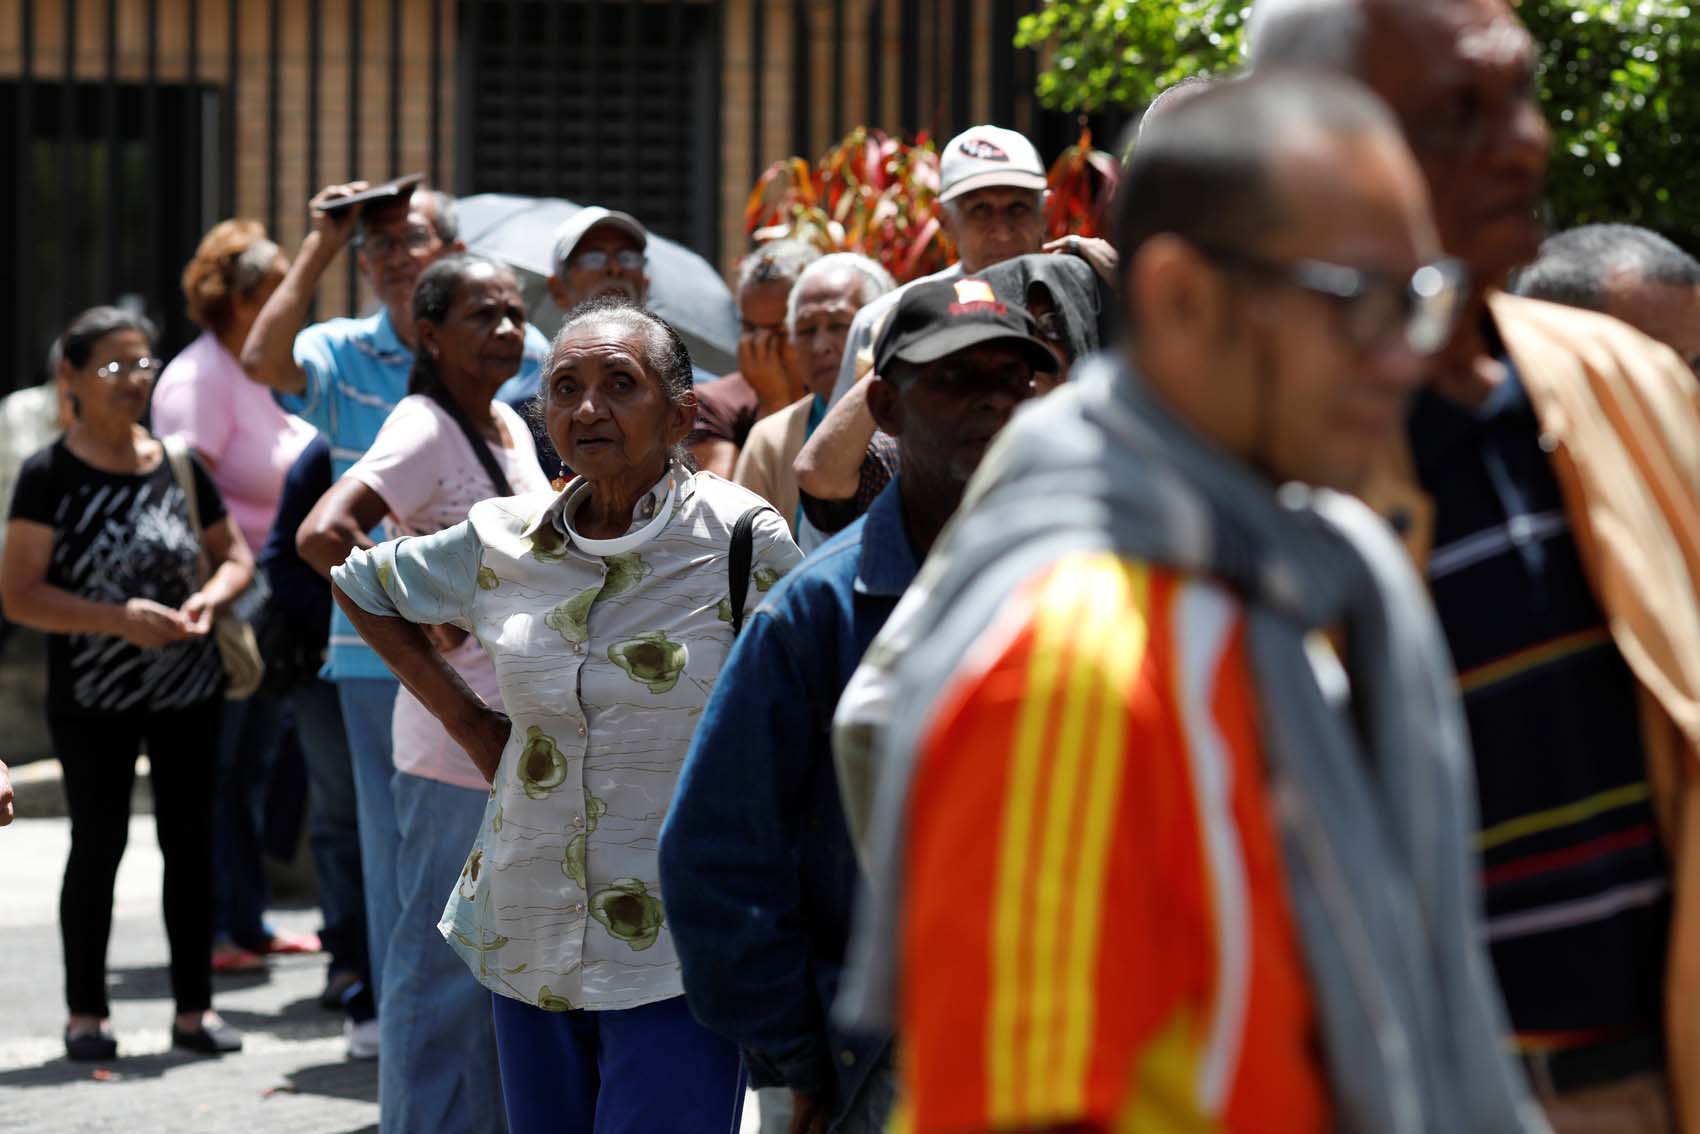 Existir en Venezuela: ya nadie vive, solo sobrevive (VIDEO)